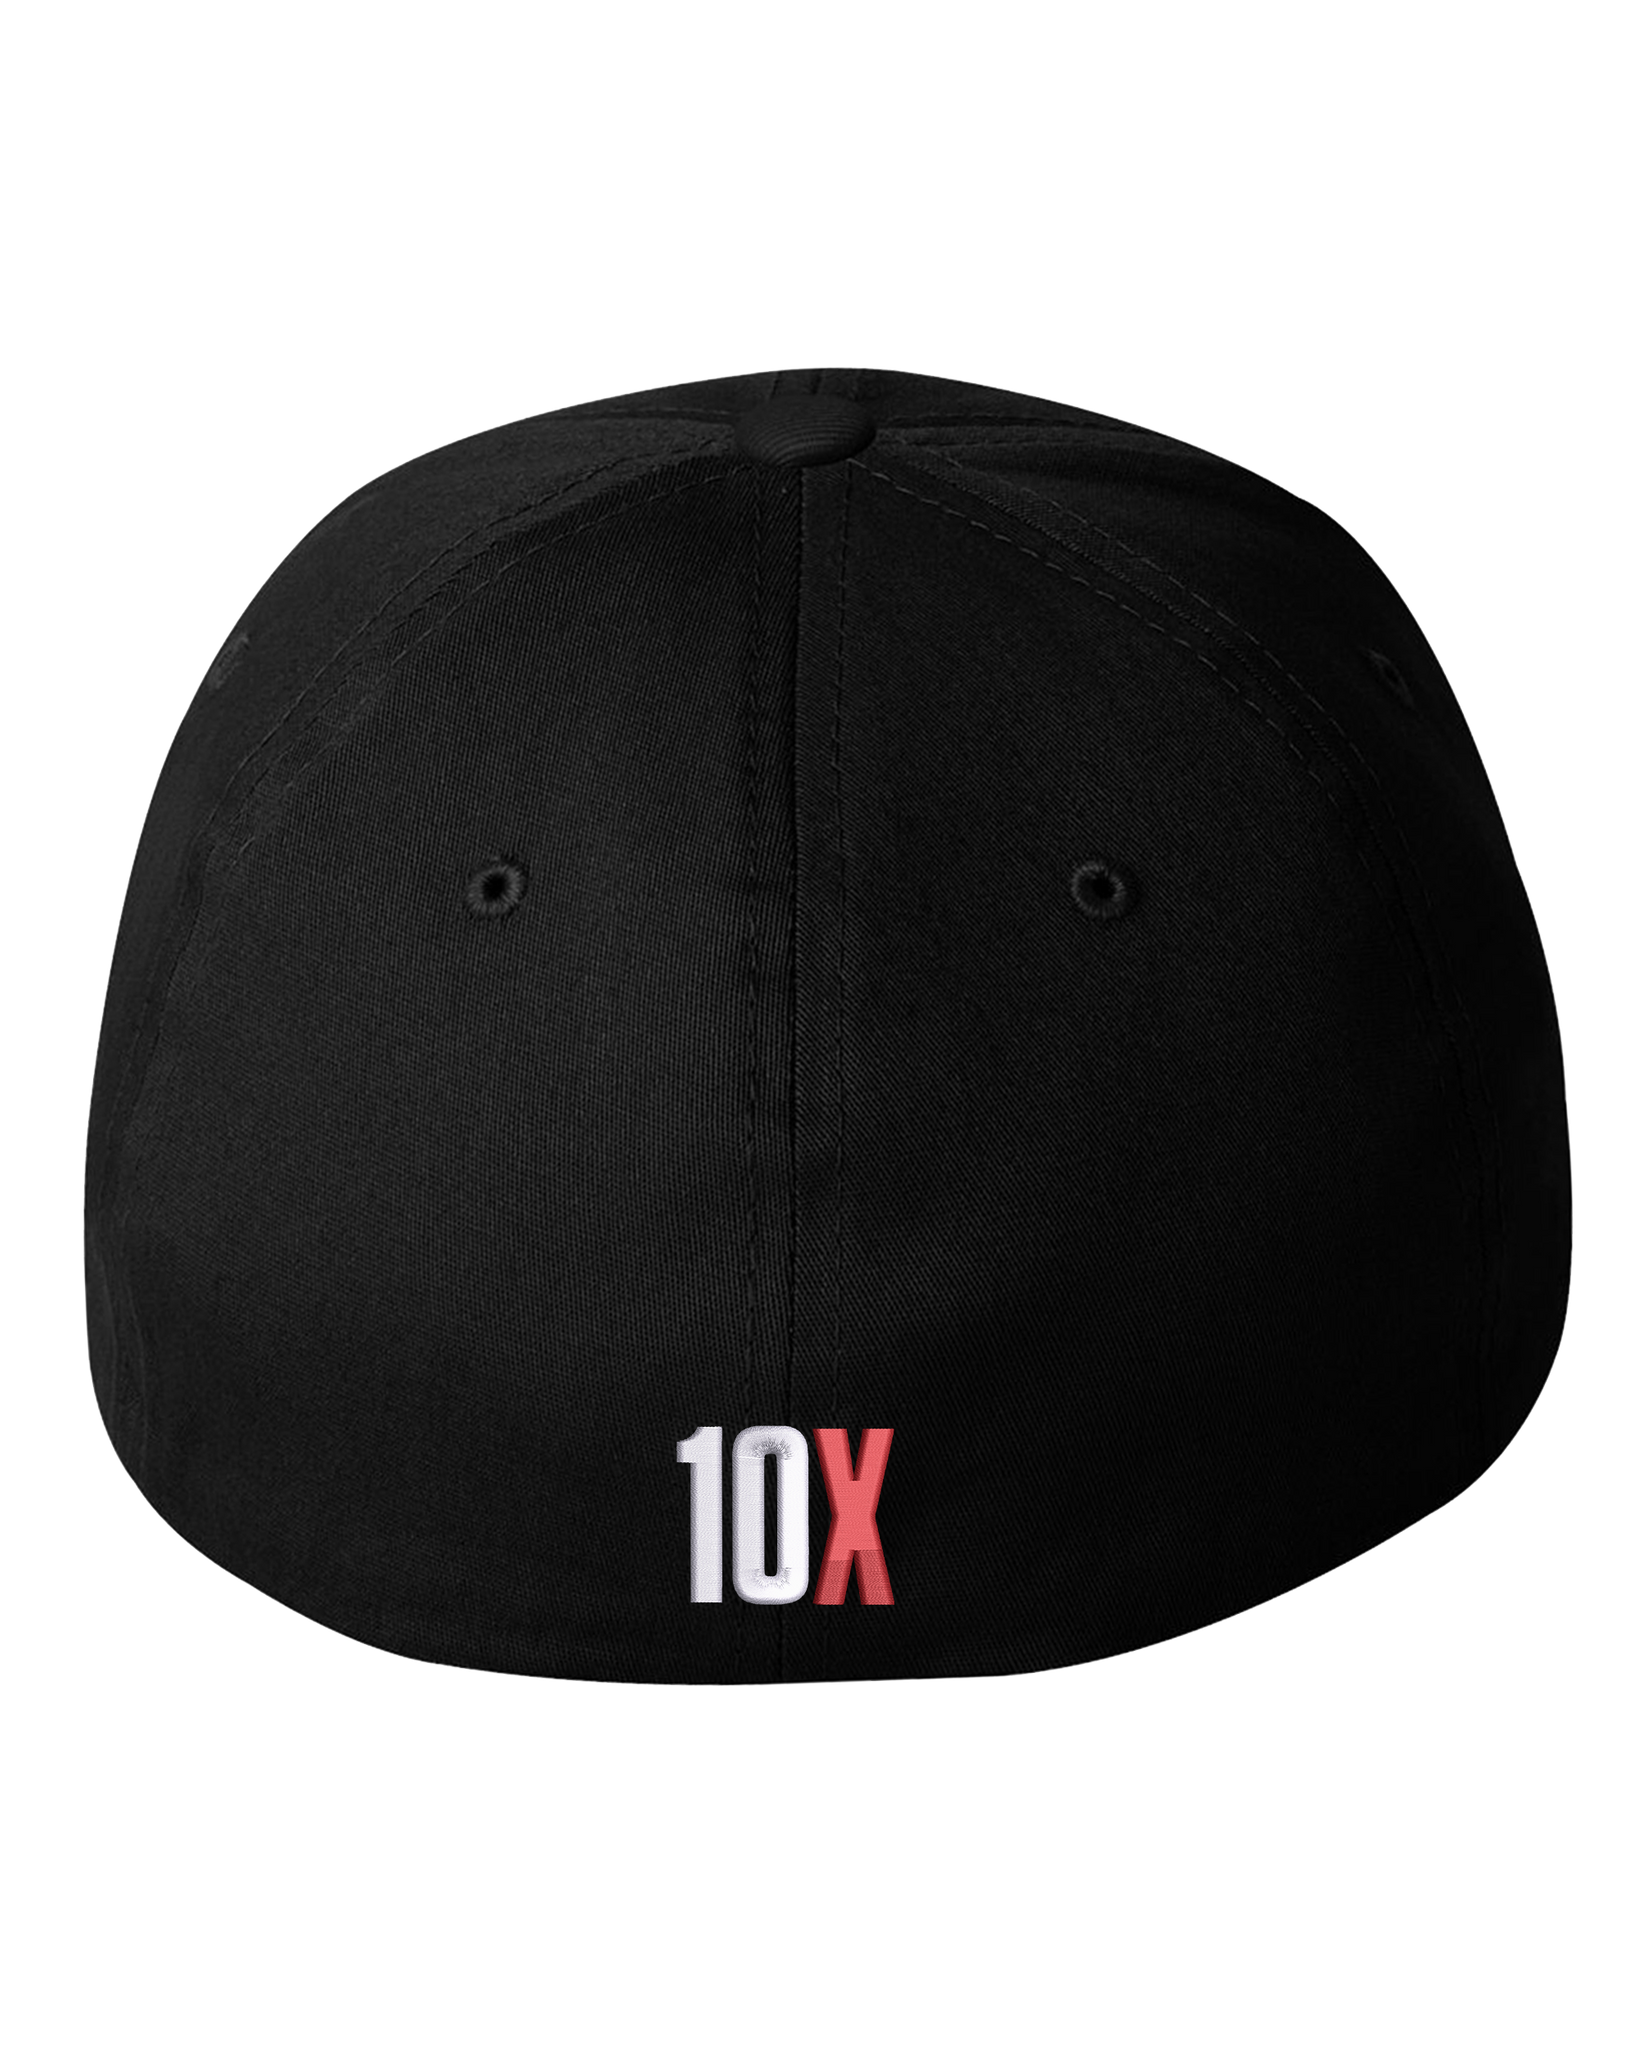 Flex Fit Hat